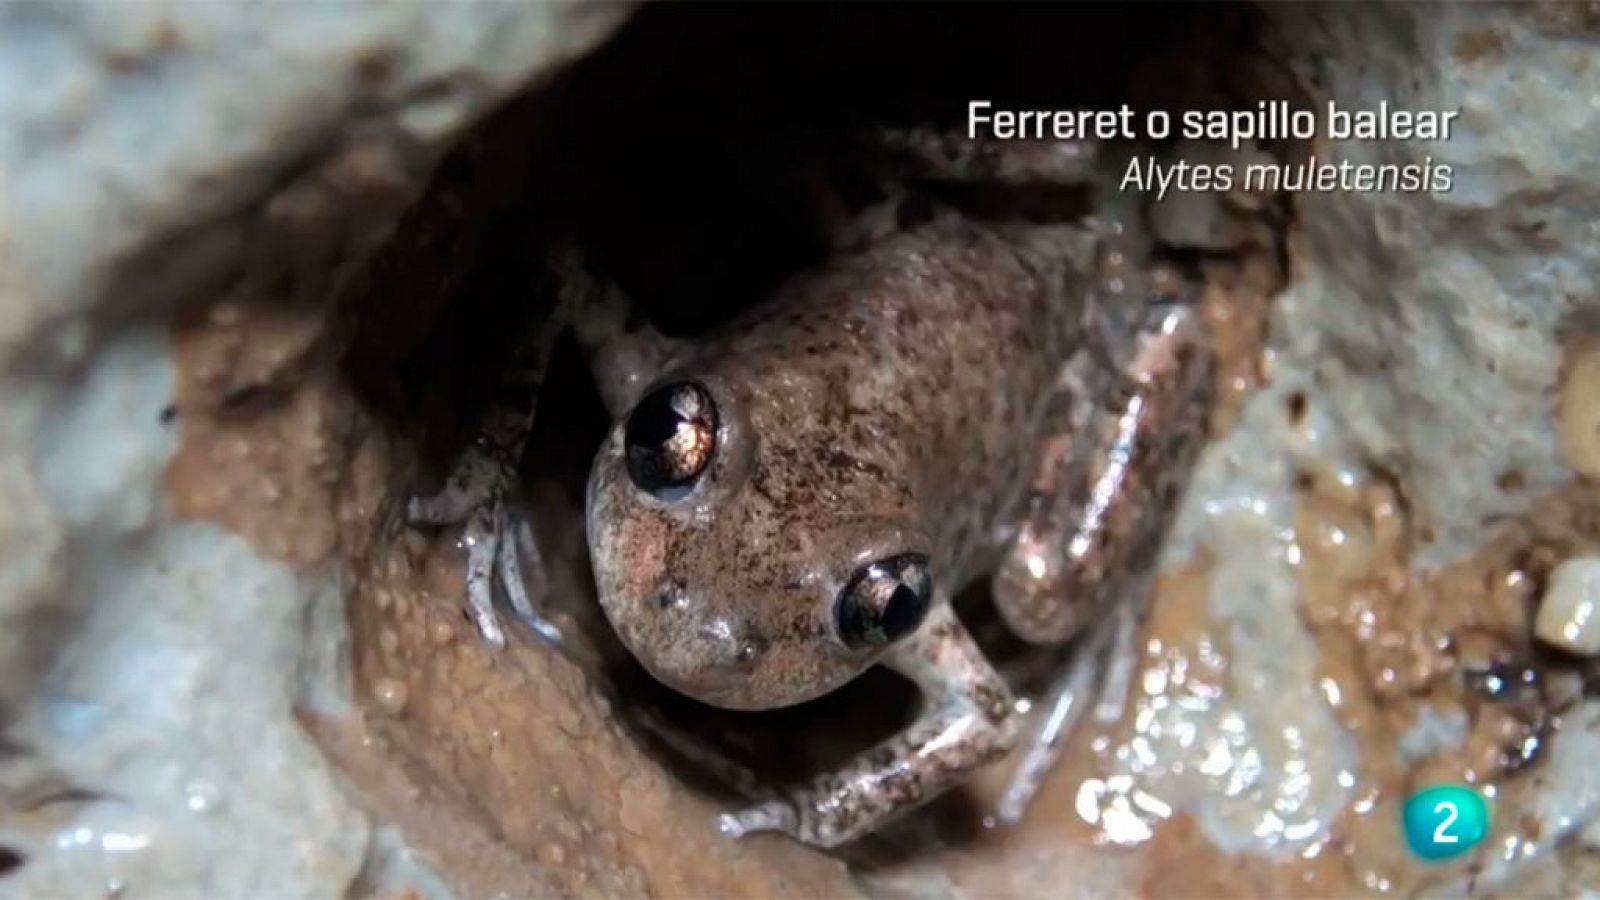 ¡Qué animal! - En Mallorca descubrimos el ferreret, uno de los anfibios más pequeños del mundo